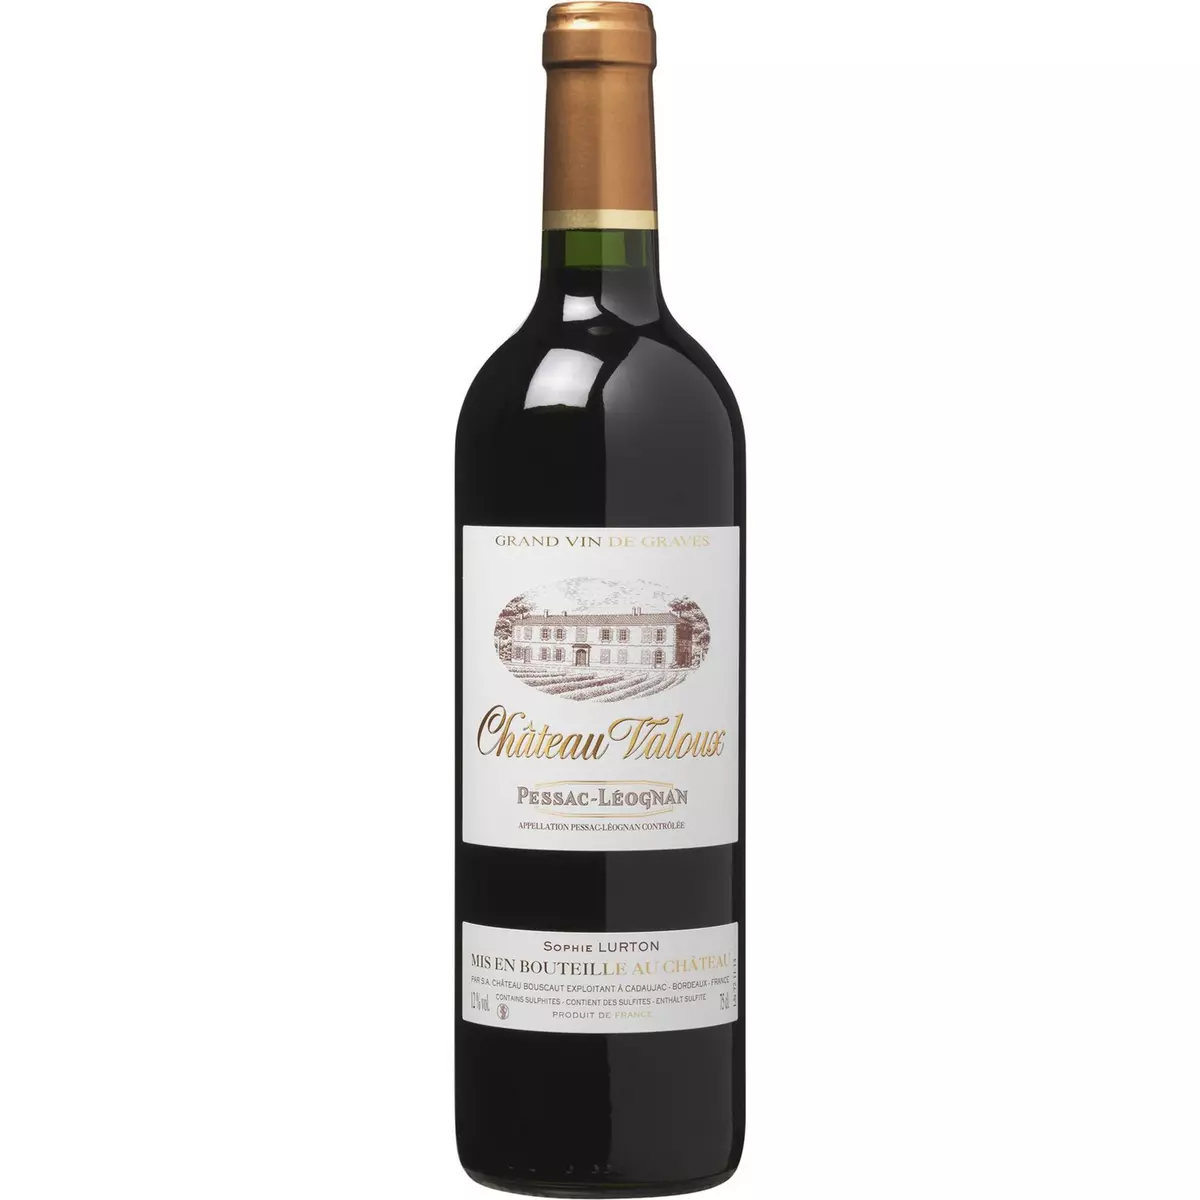 Vin rouge AOP Pessac-Léognan Château Valoux Bordeaux 75cl